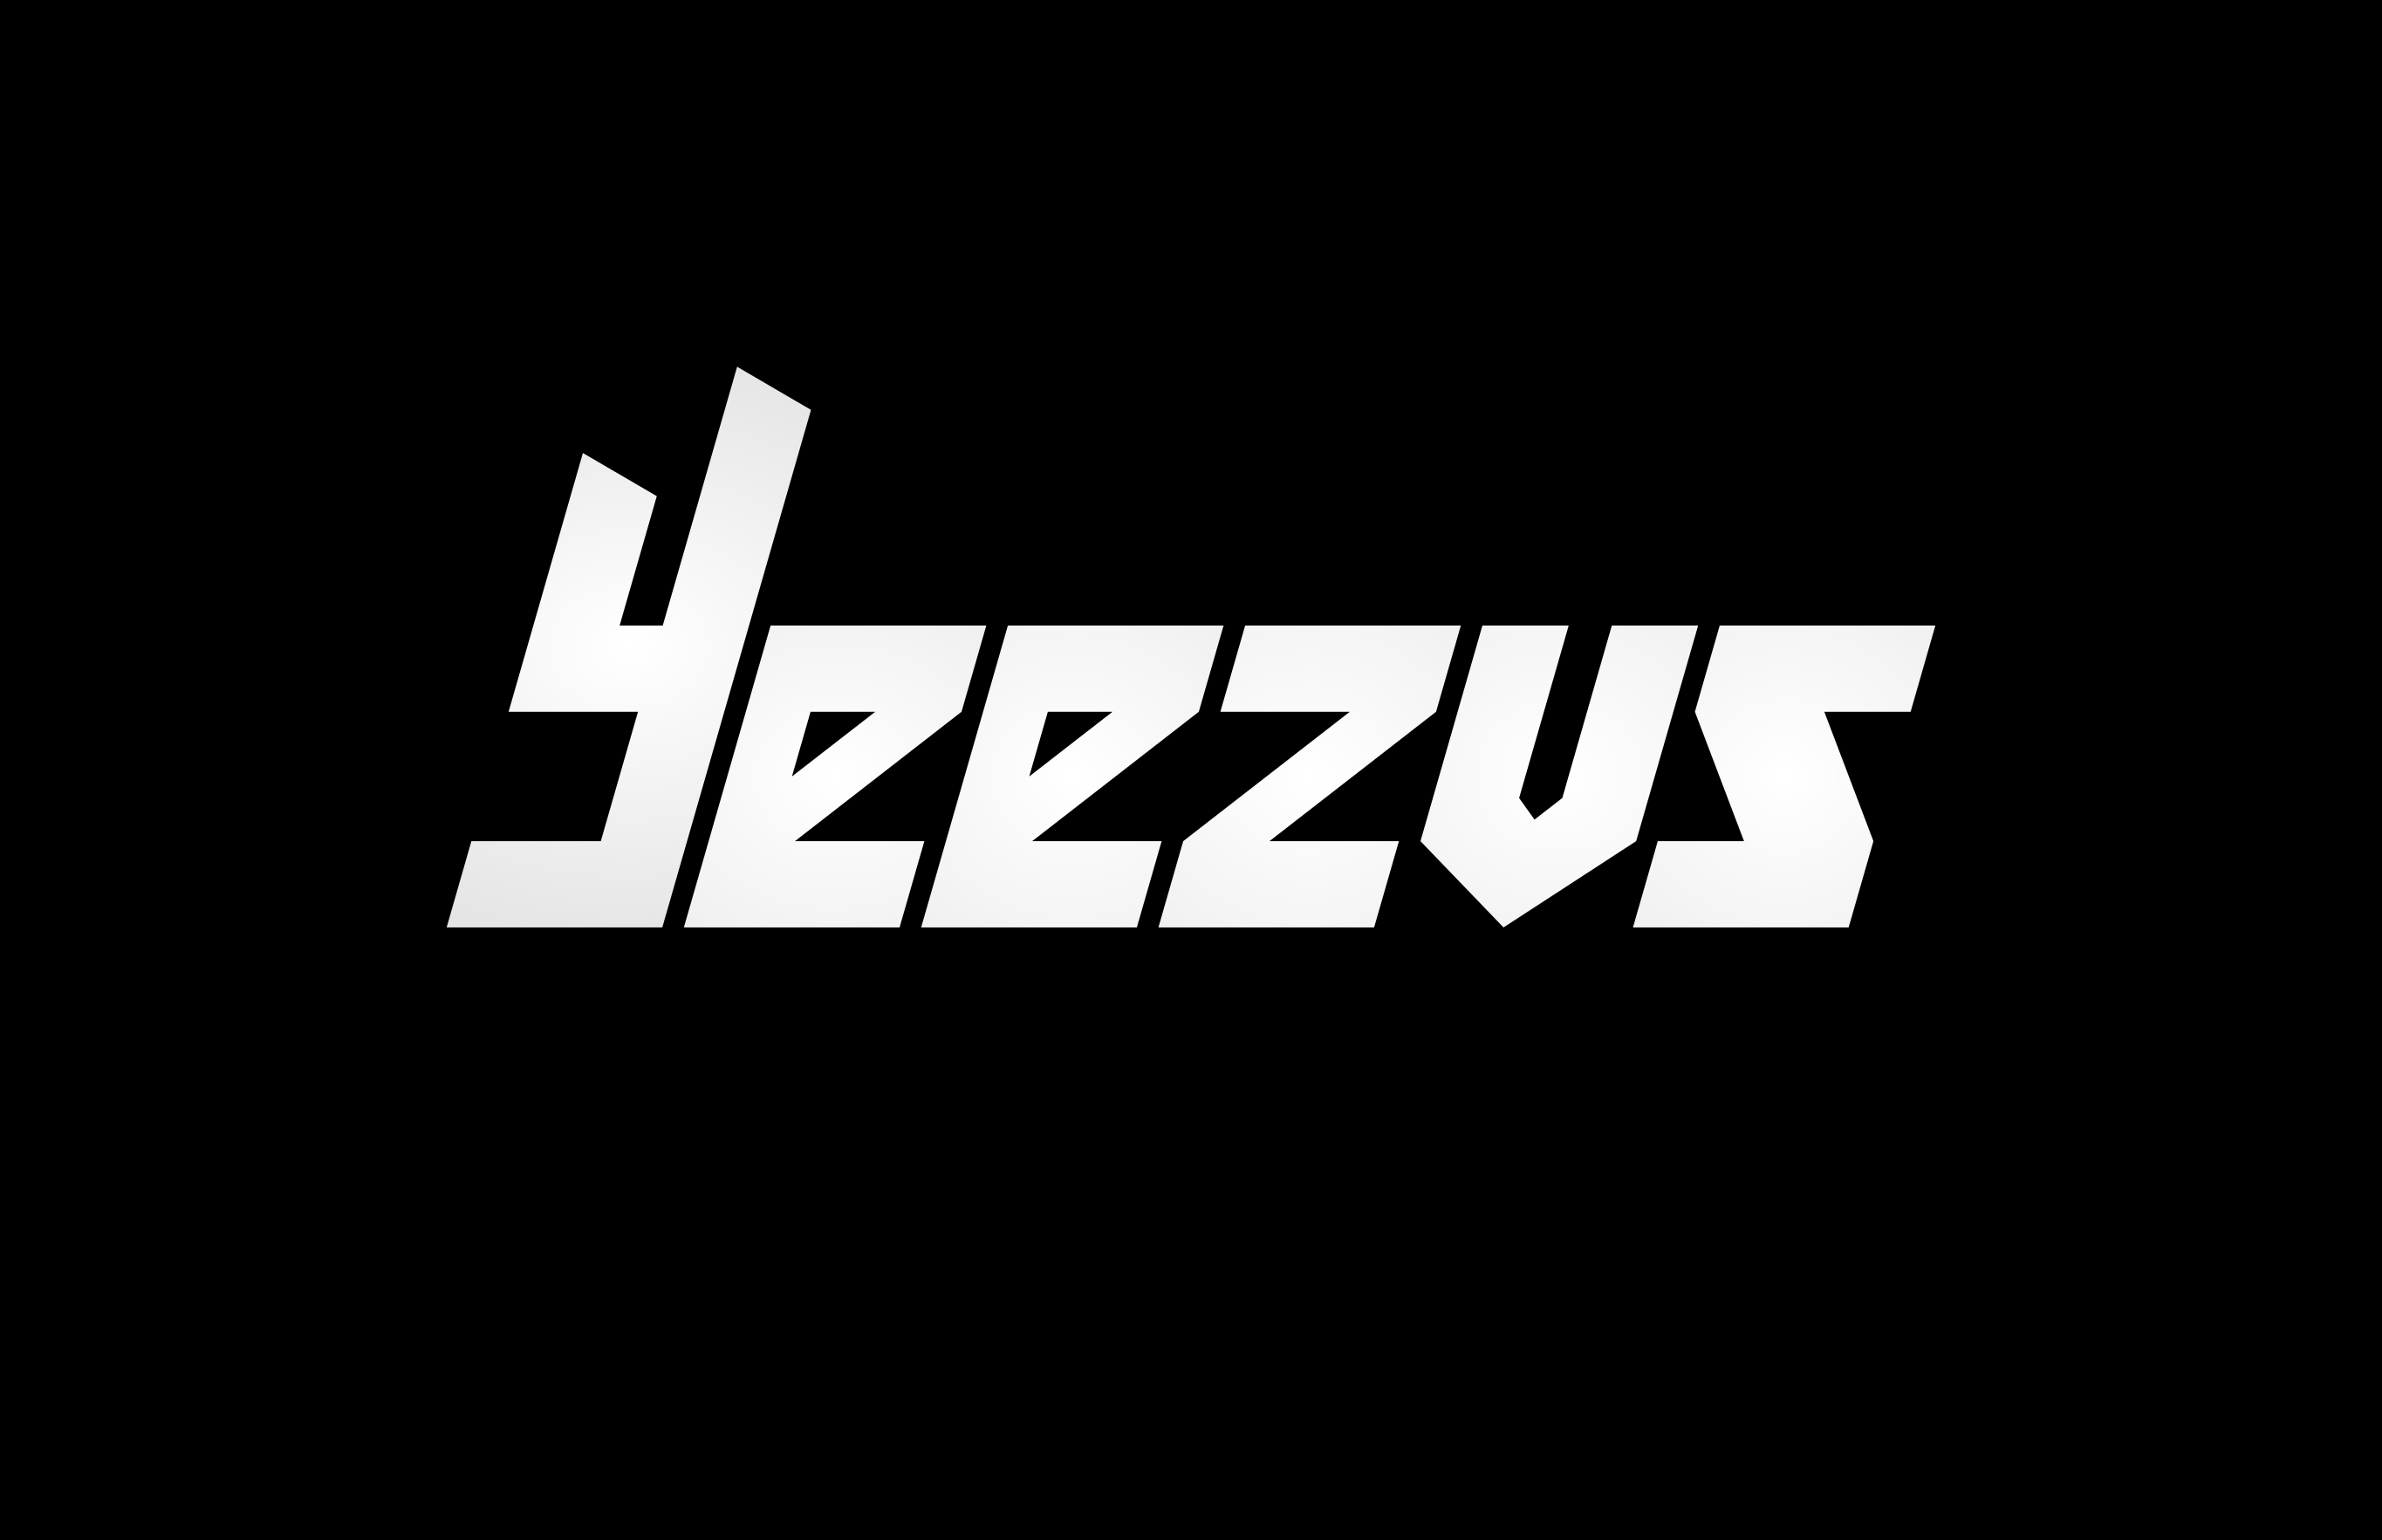 Yeezus Logo - Yeezus Logos